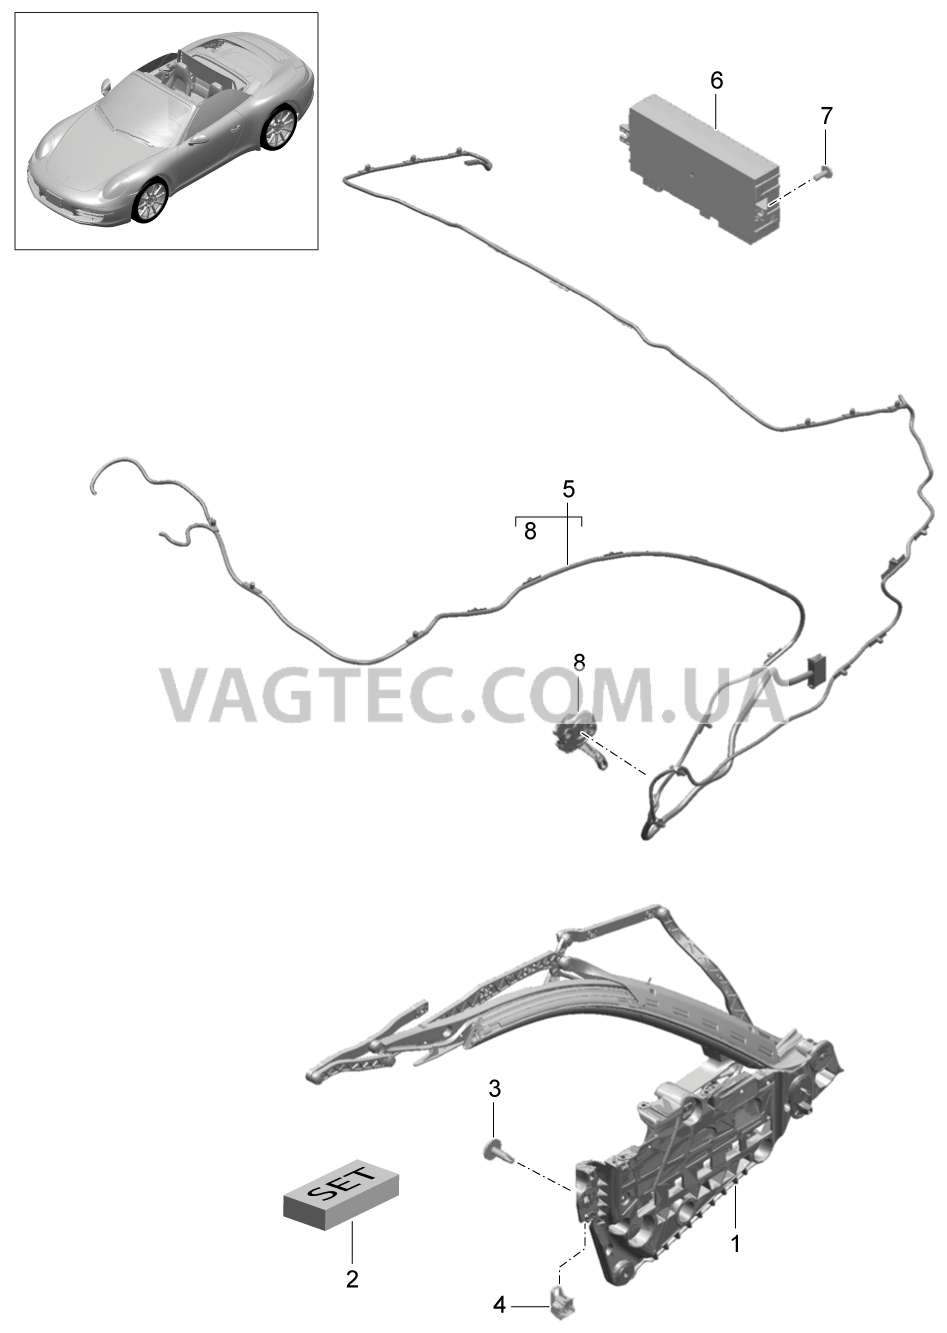 811-025 Каркас складного верха, Отдельные детали, боковой, и, Электродетали
						
						CABRIO для PORSCHE 911.Carrera 2012-2016USA